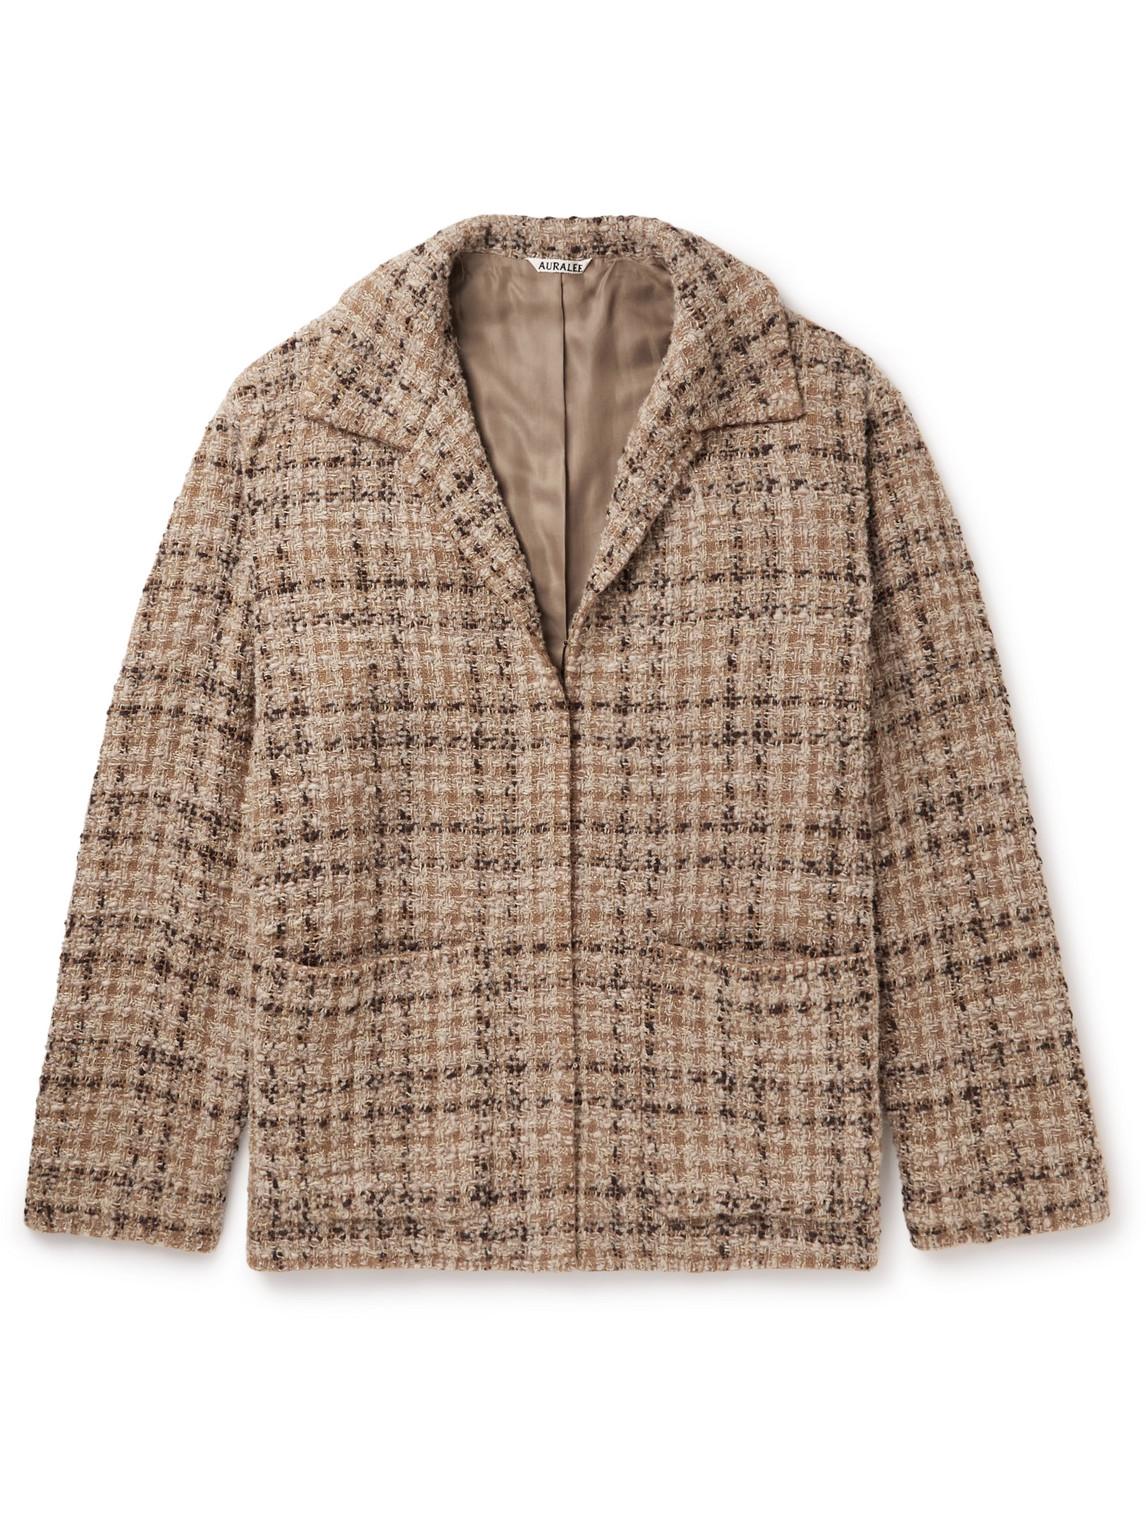 AURALEE Homespun Wool-blend Tweed Coat in Brown for Men | Lyst